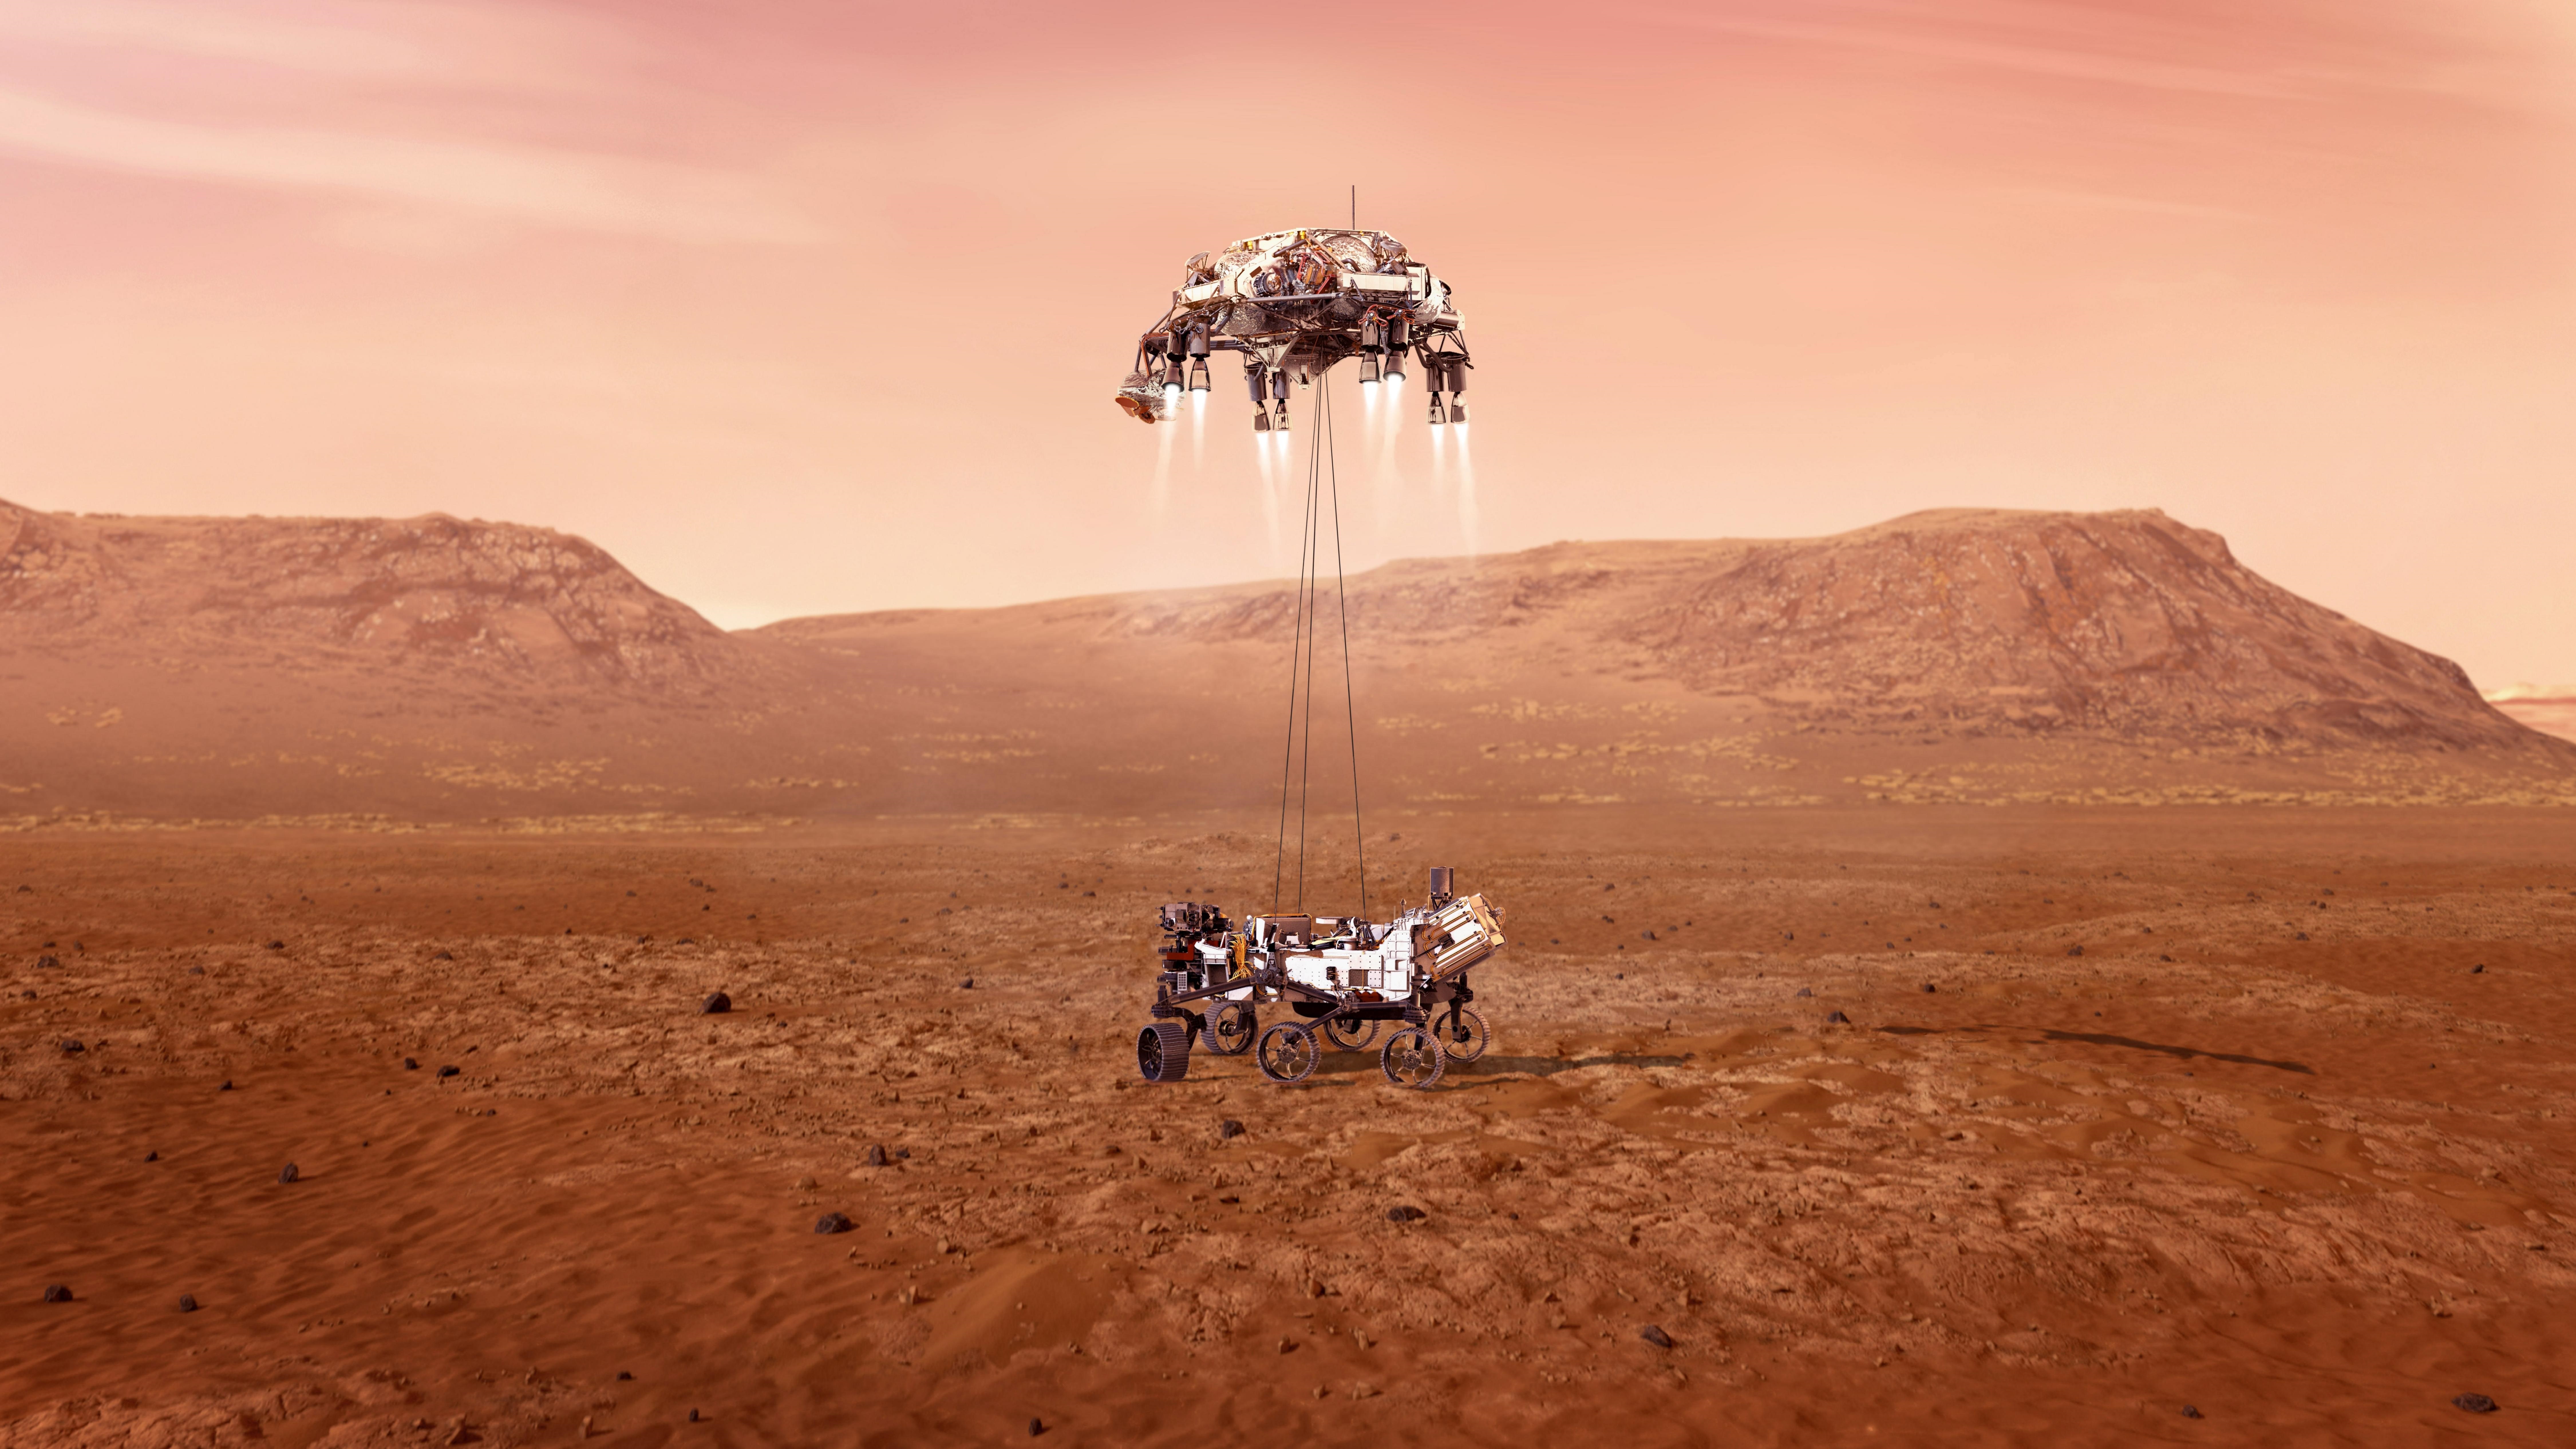 Fotografía cedida este miércoles por la Administración Nacional de Aeronáutica y el Espacio (NASA) que muestra una ilustración del rover Perseverance mientras aterriza de forma segura sobre la superficie de Marte. EFE/ Emma Howells/ NASA
